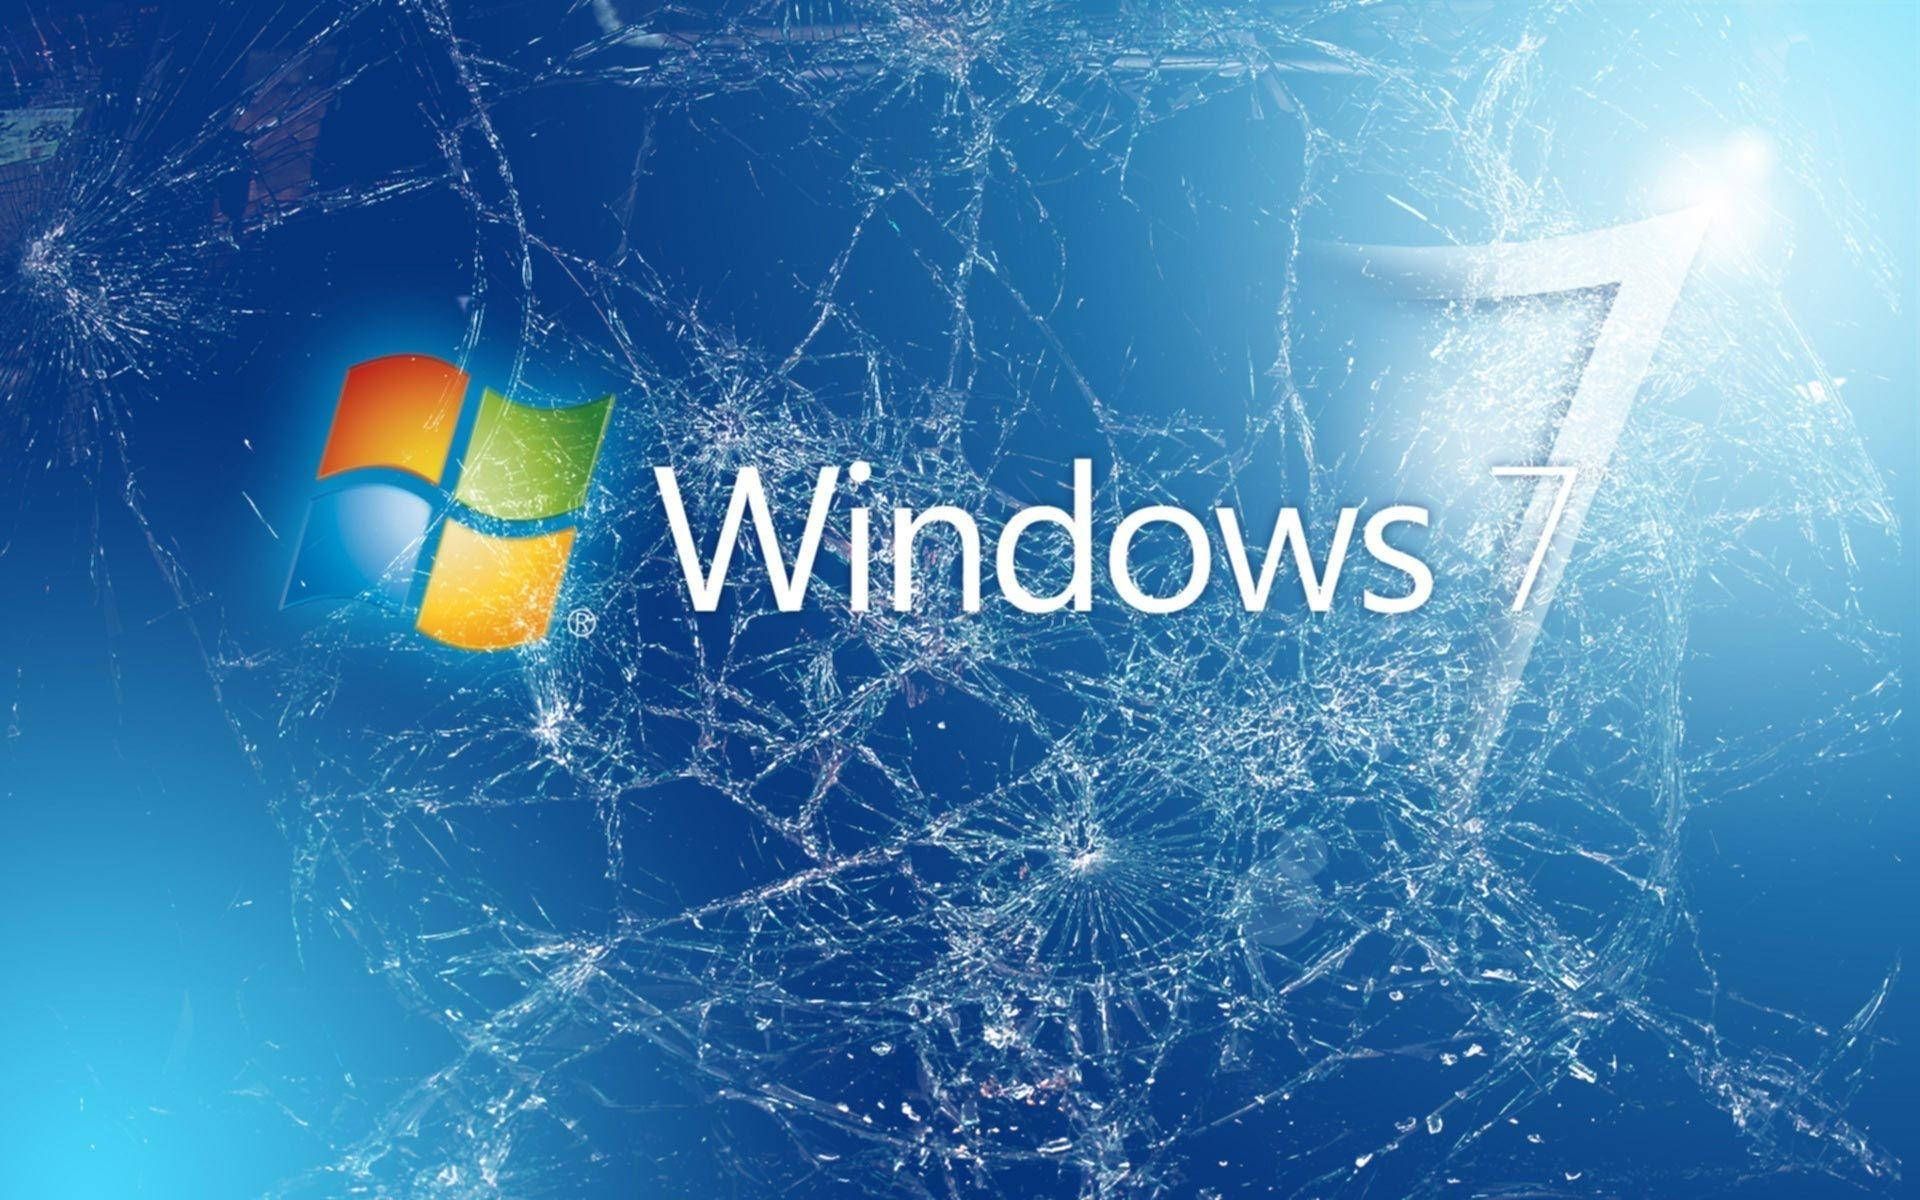 Ngày mà Windows 7 được cập nhật miễn phí lên Windows 10 và 11 đã chính thức chấm dứt